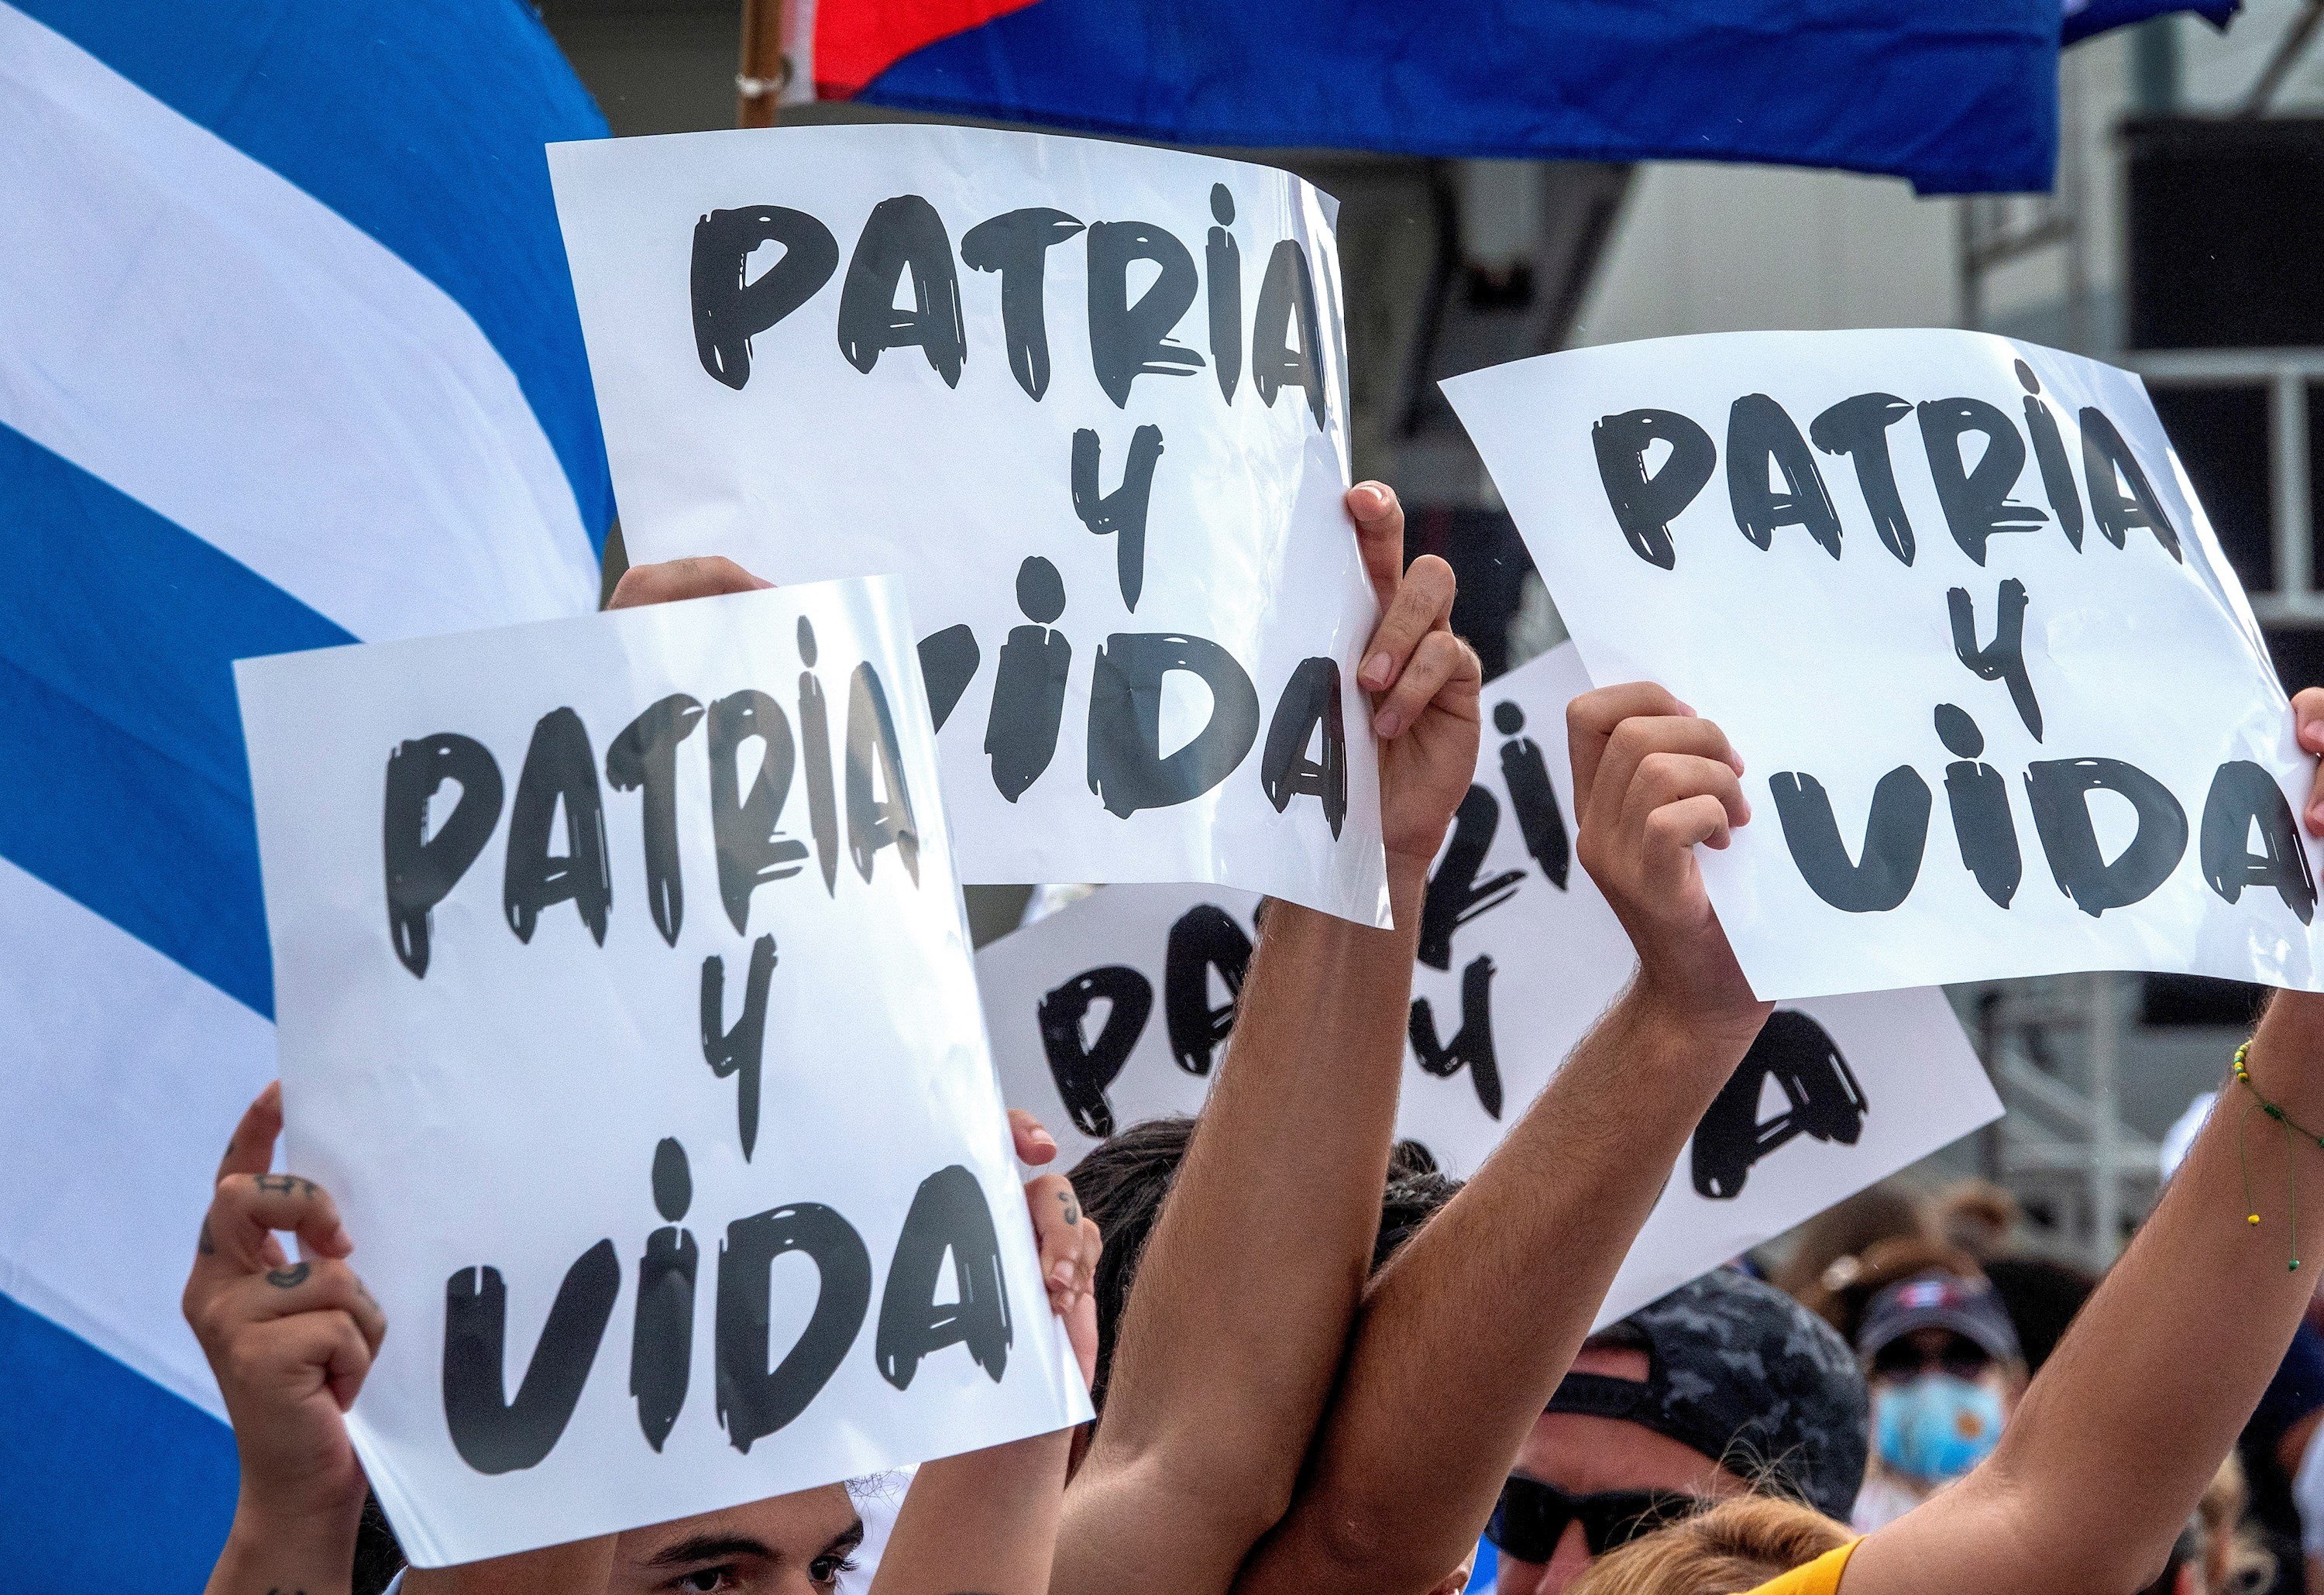 El primer gest del govern de Cuba després de quatre dies de protestes